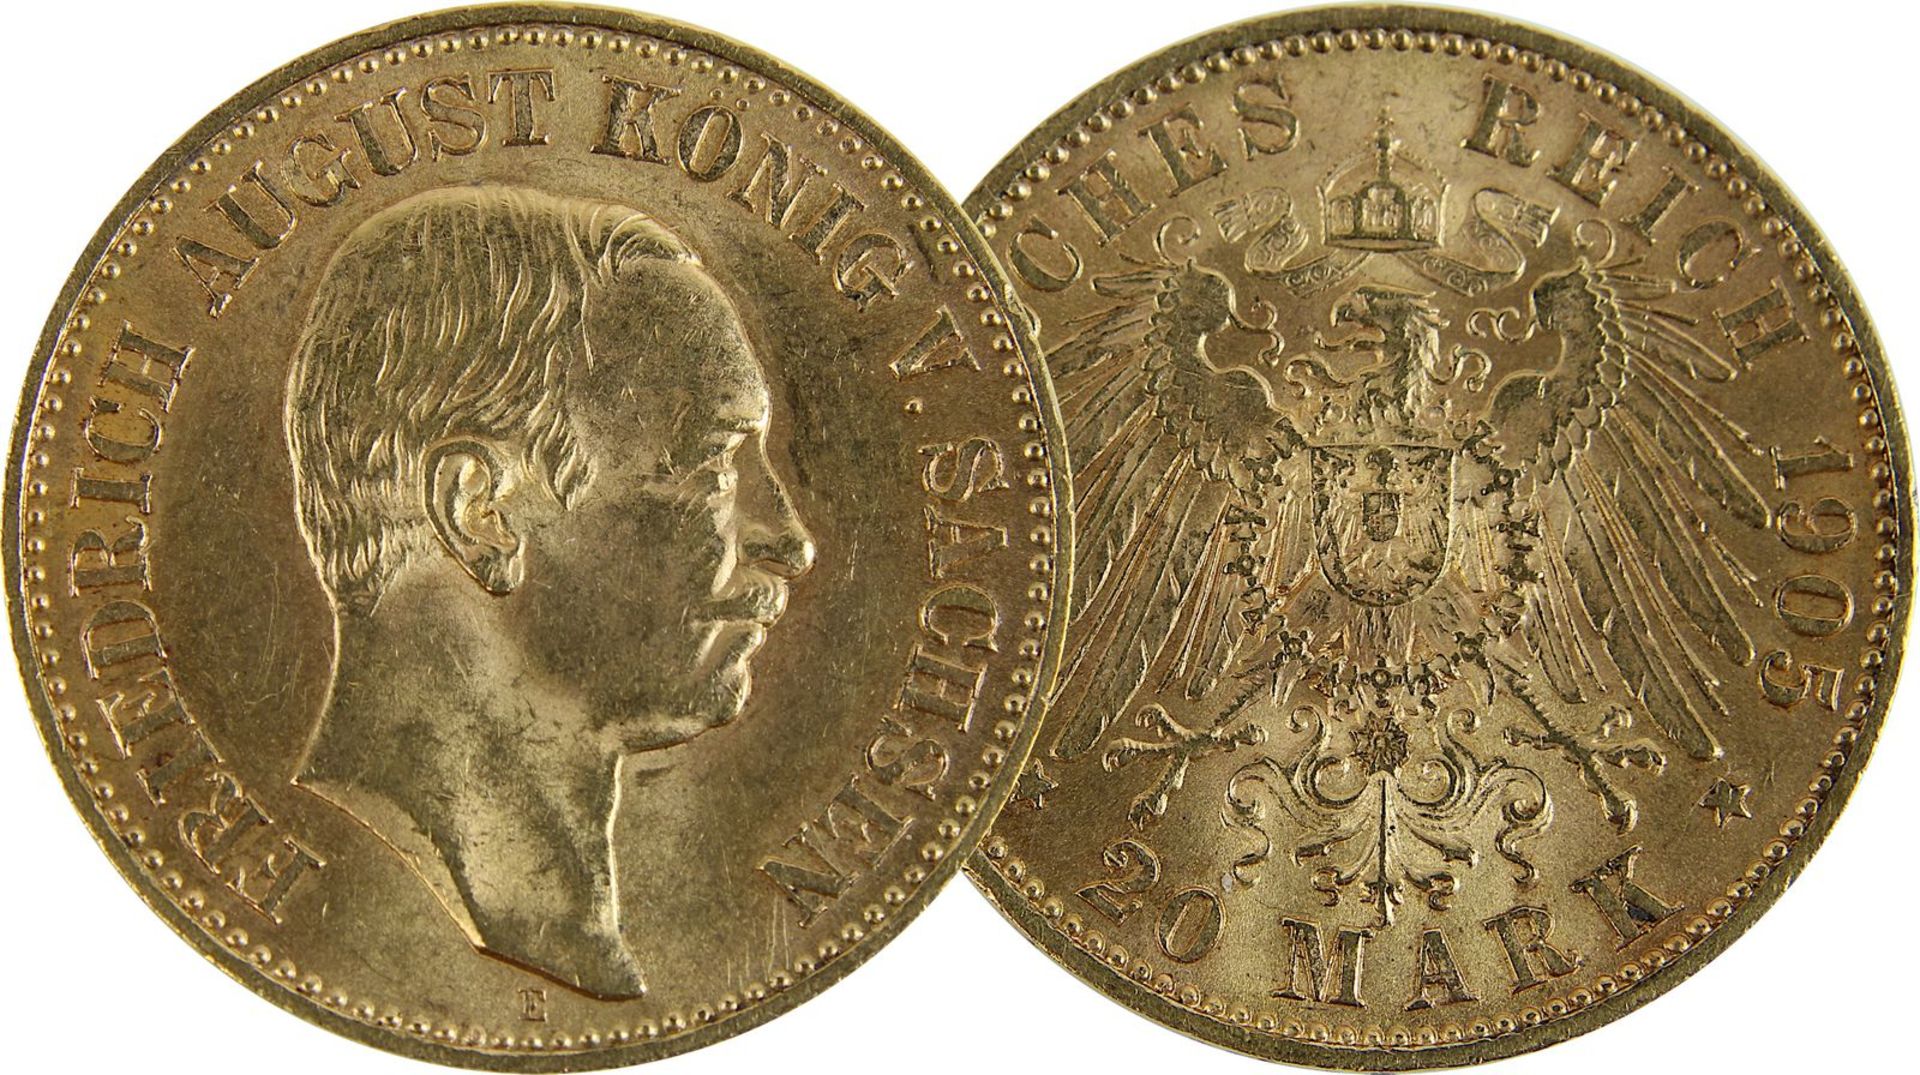 Goldmünze zu 20 Mark, Sachsen - Deutsches Reich 1905, Avers: Kopf Friedrich August von Sachsen